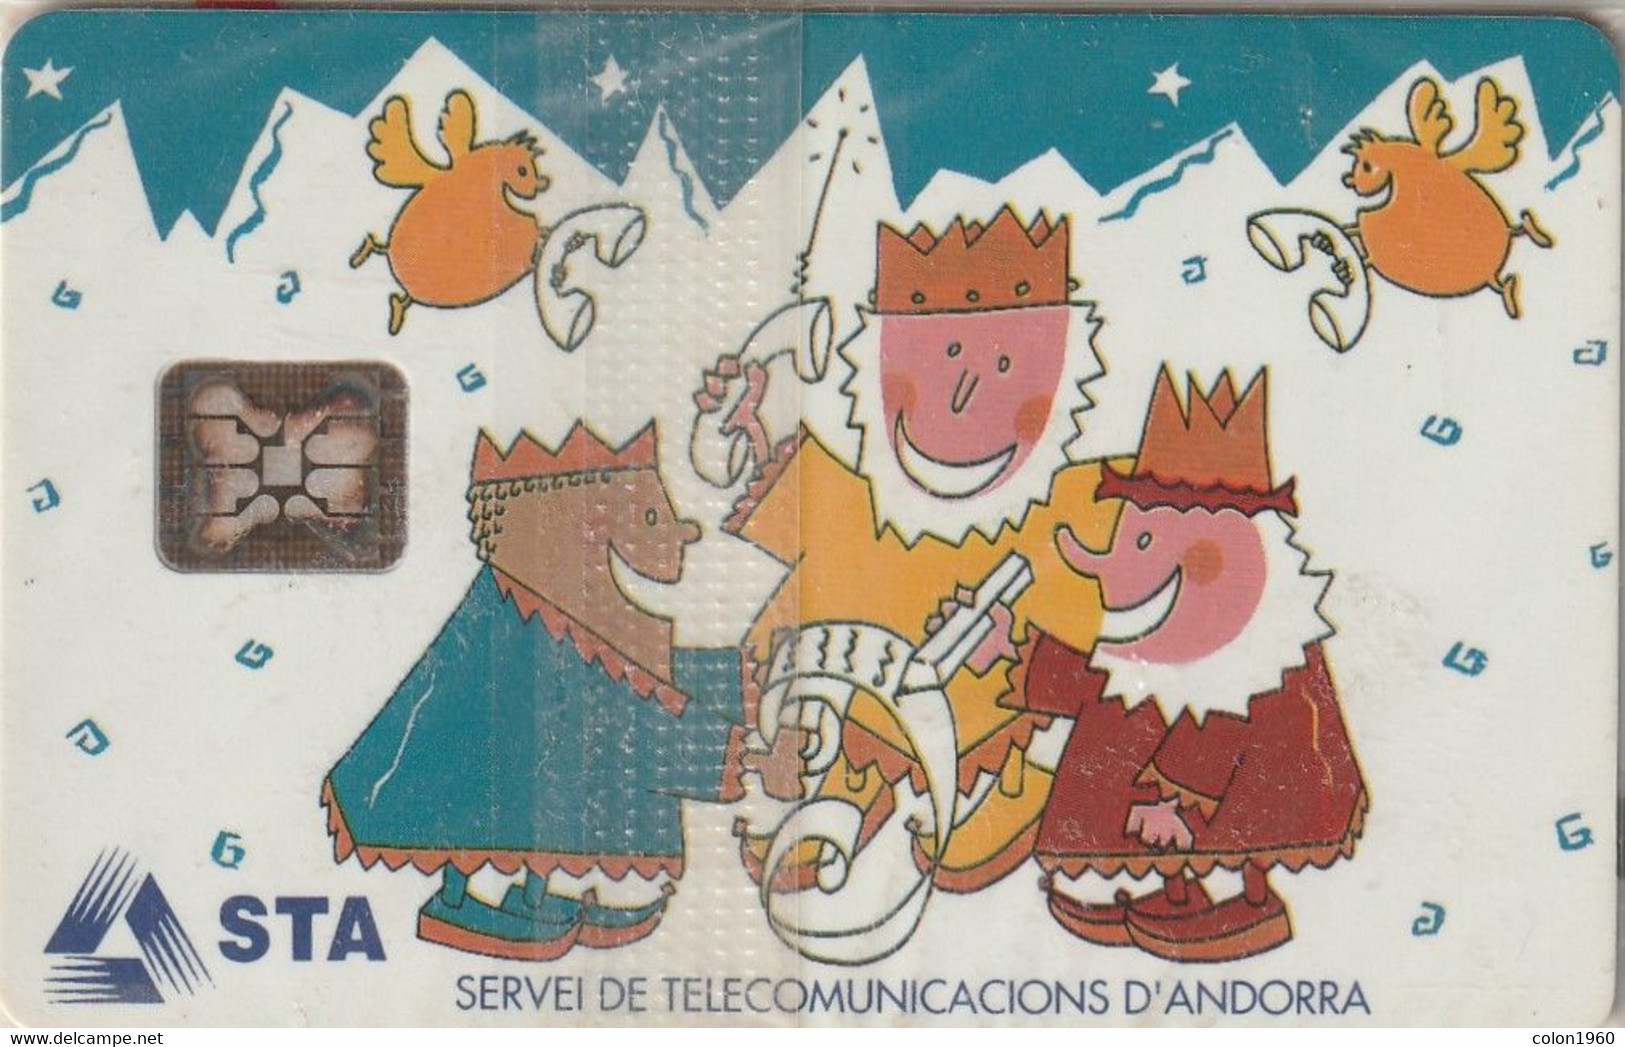 ANDORRA. AND-015. Christmas 1993-12. 3000 Ex. MINT - RARE. (112) - Andorra